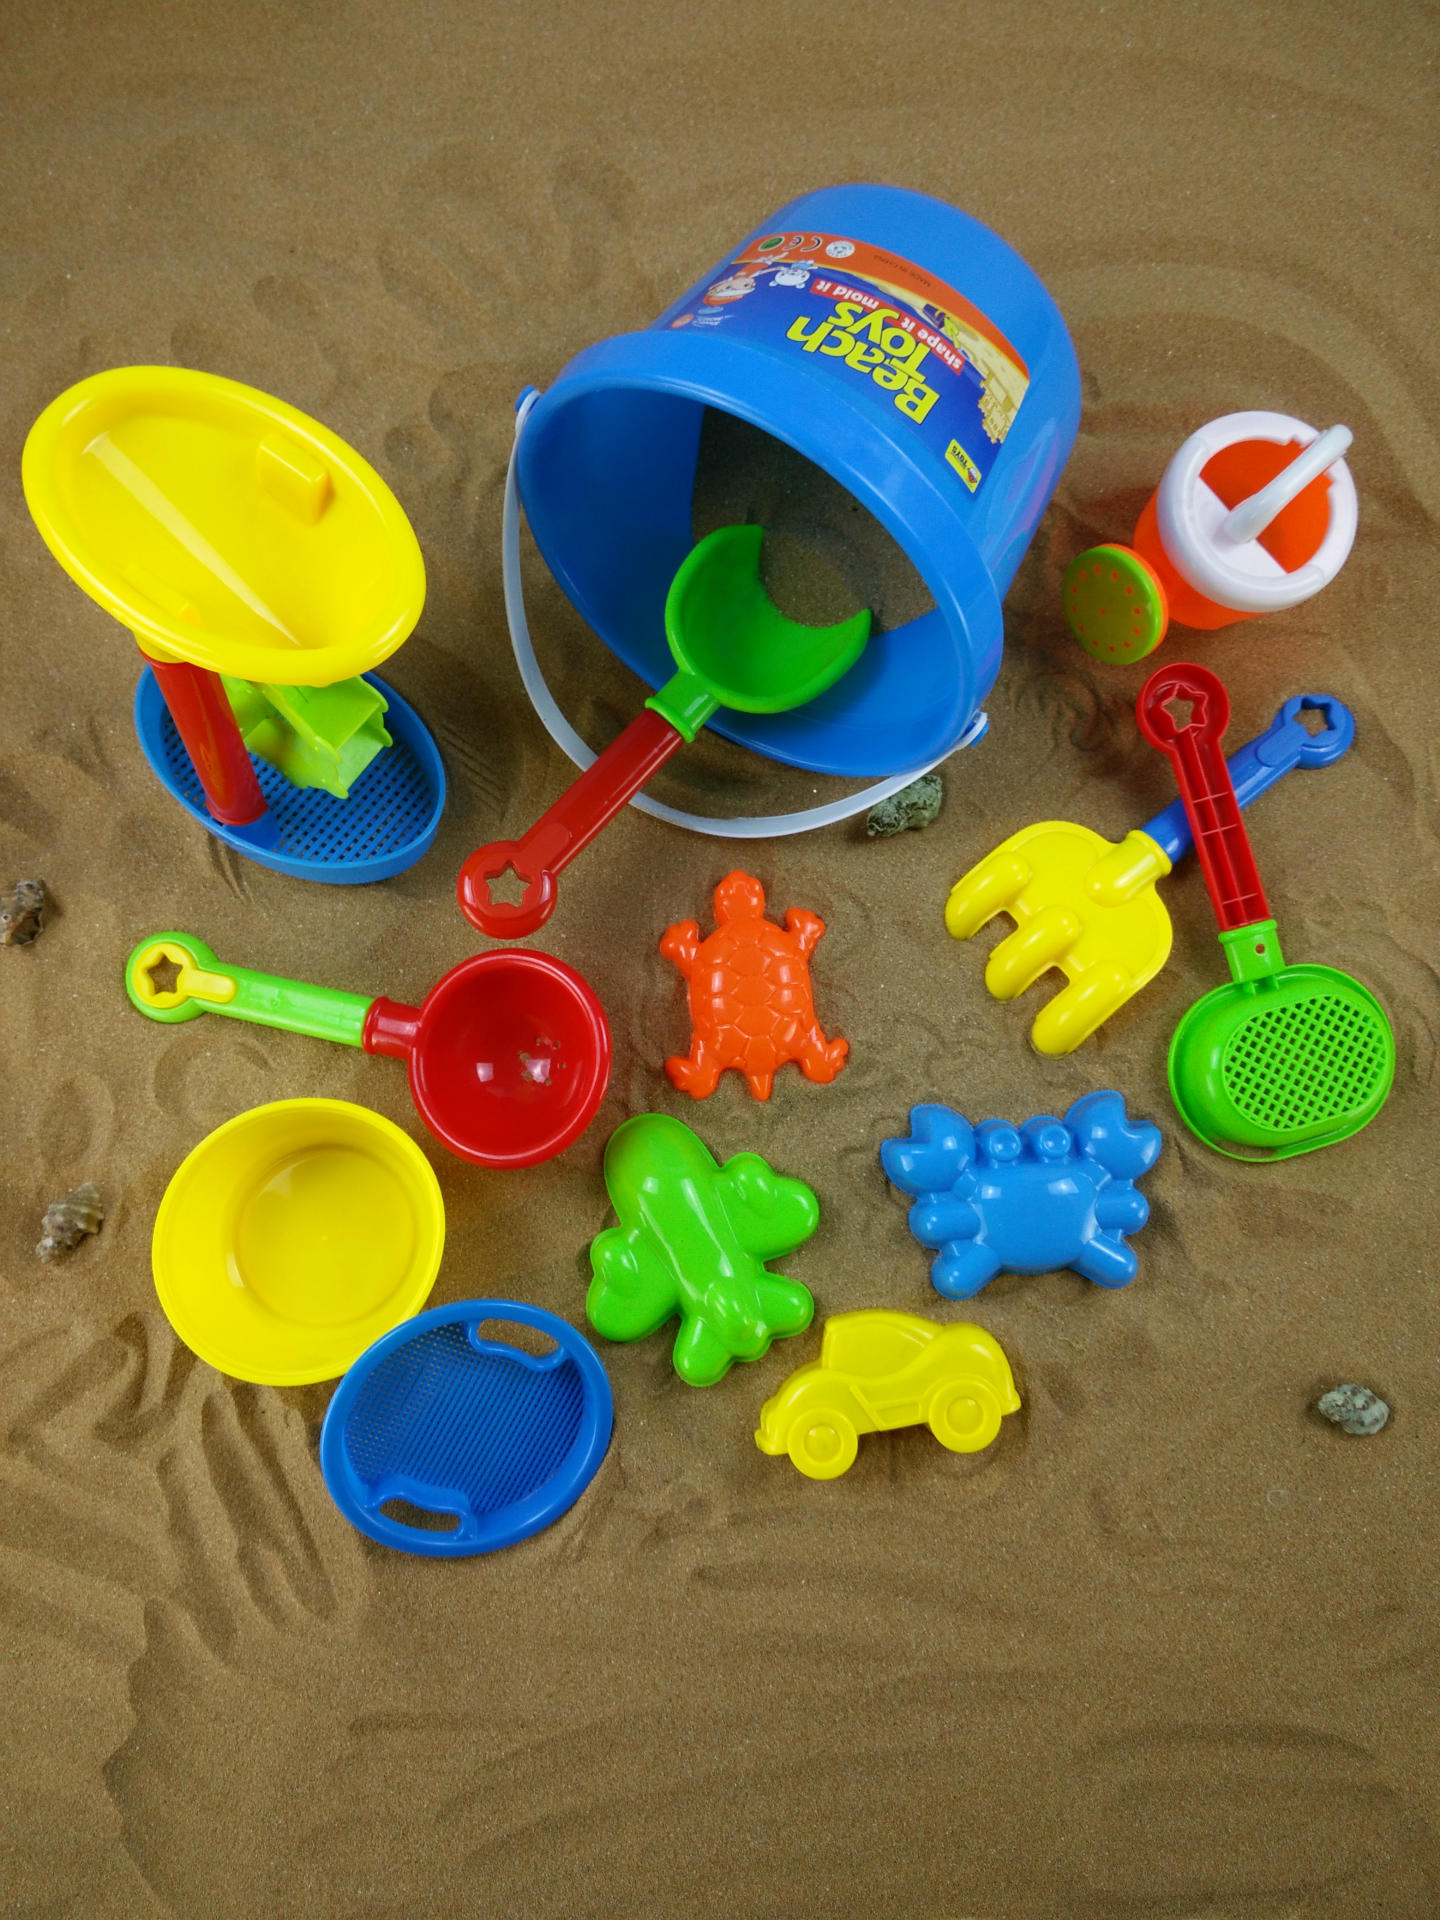 8108儿童沙滩玩具 沙滩桶13件套装 儿童过家家益智玩具决明子批发